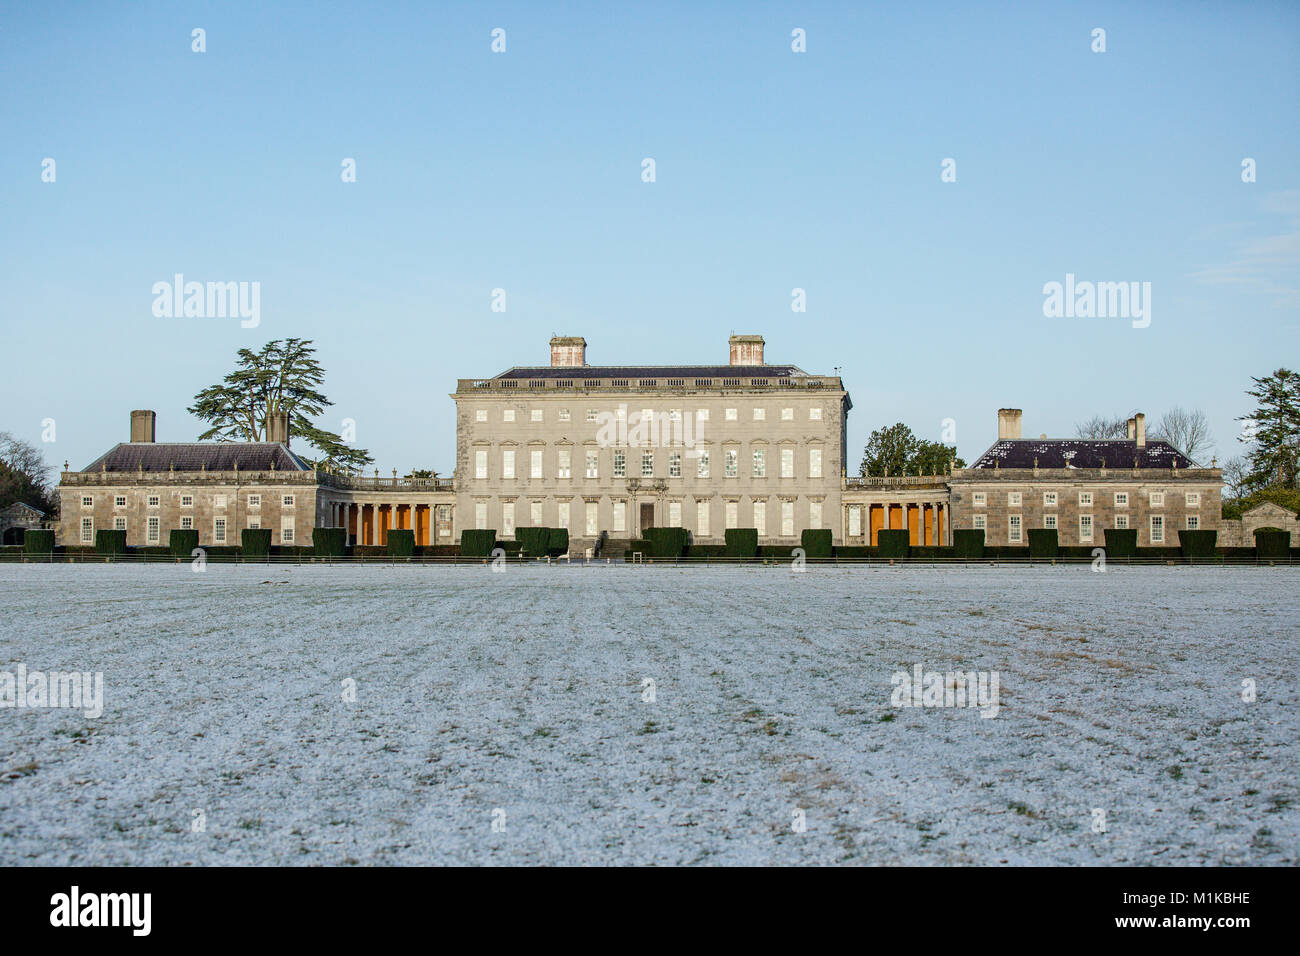 Castletown House et les parcs couverts de neige, par un froid matin de janvier. Ciel clair. Celbridge, comté de Kildare, Irlande Banque D'Images